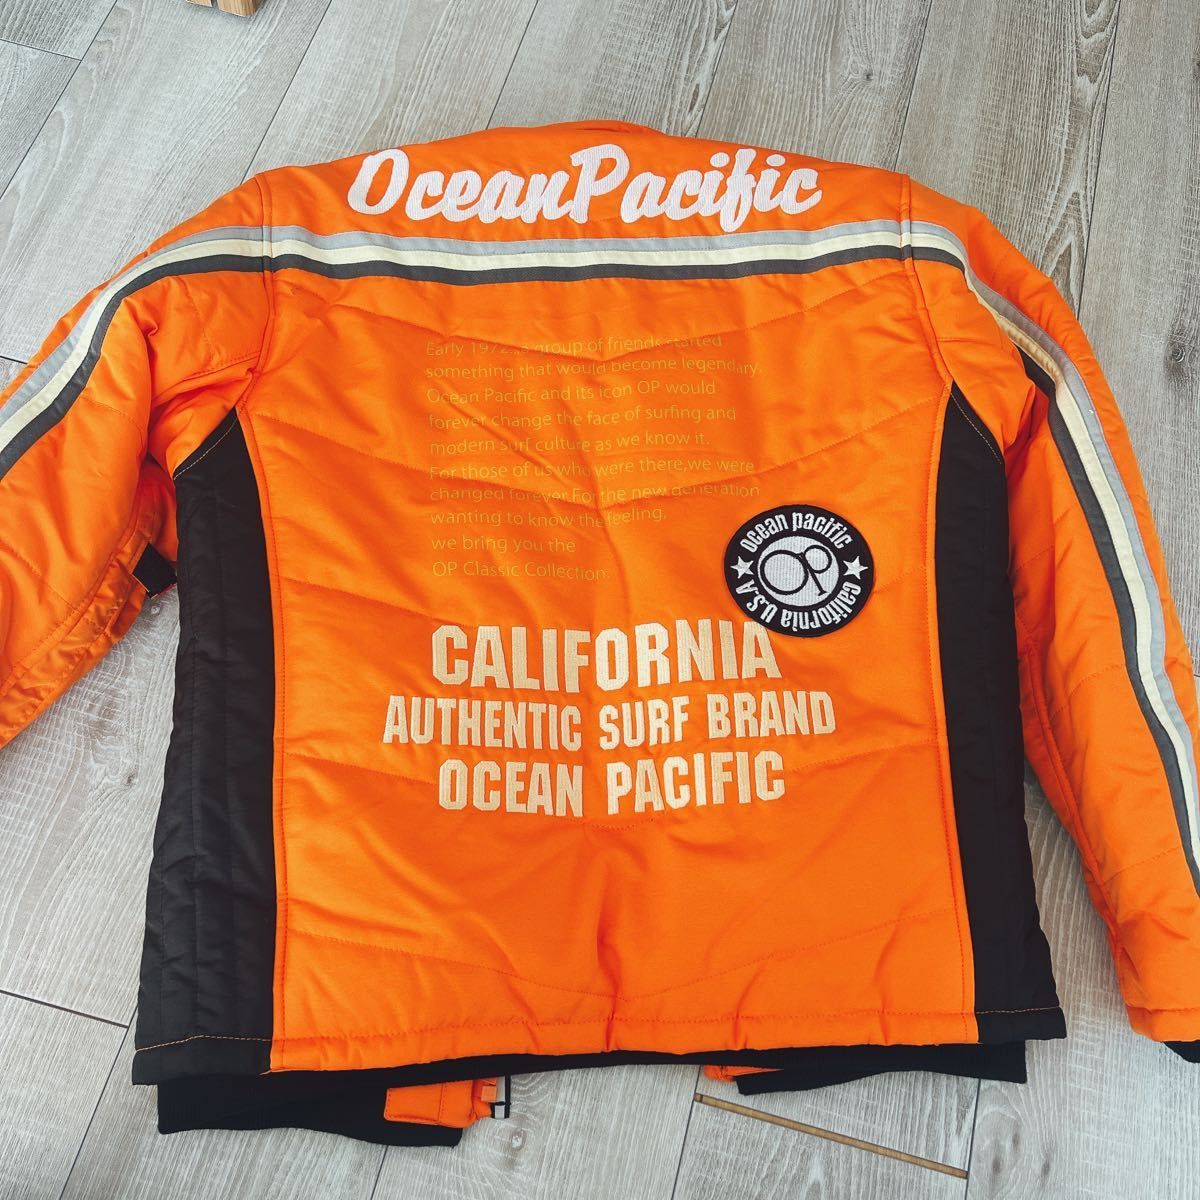 オーシャンパシフィック OP ファイバーダウンジャケット バイクウェア レディース オレンジ Mサイズ